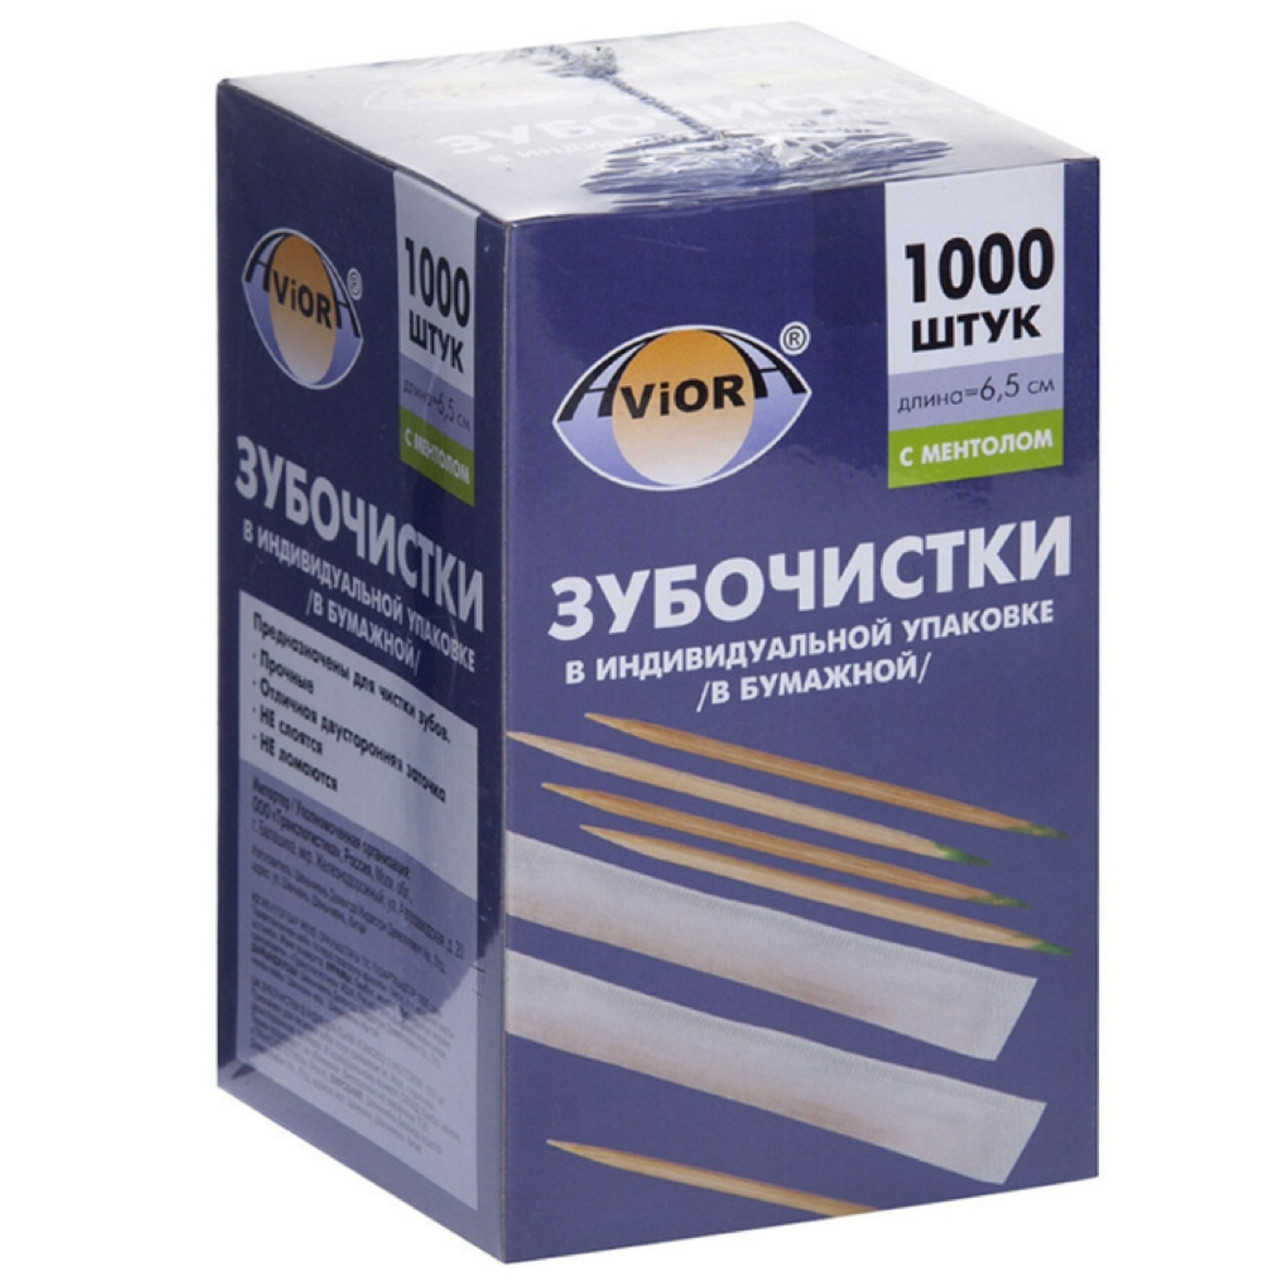 Зубочистки бамбуковые в индивидуальной упаковке Aviora, 1000шт